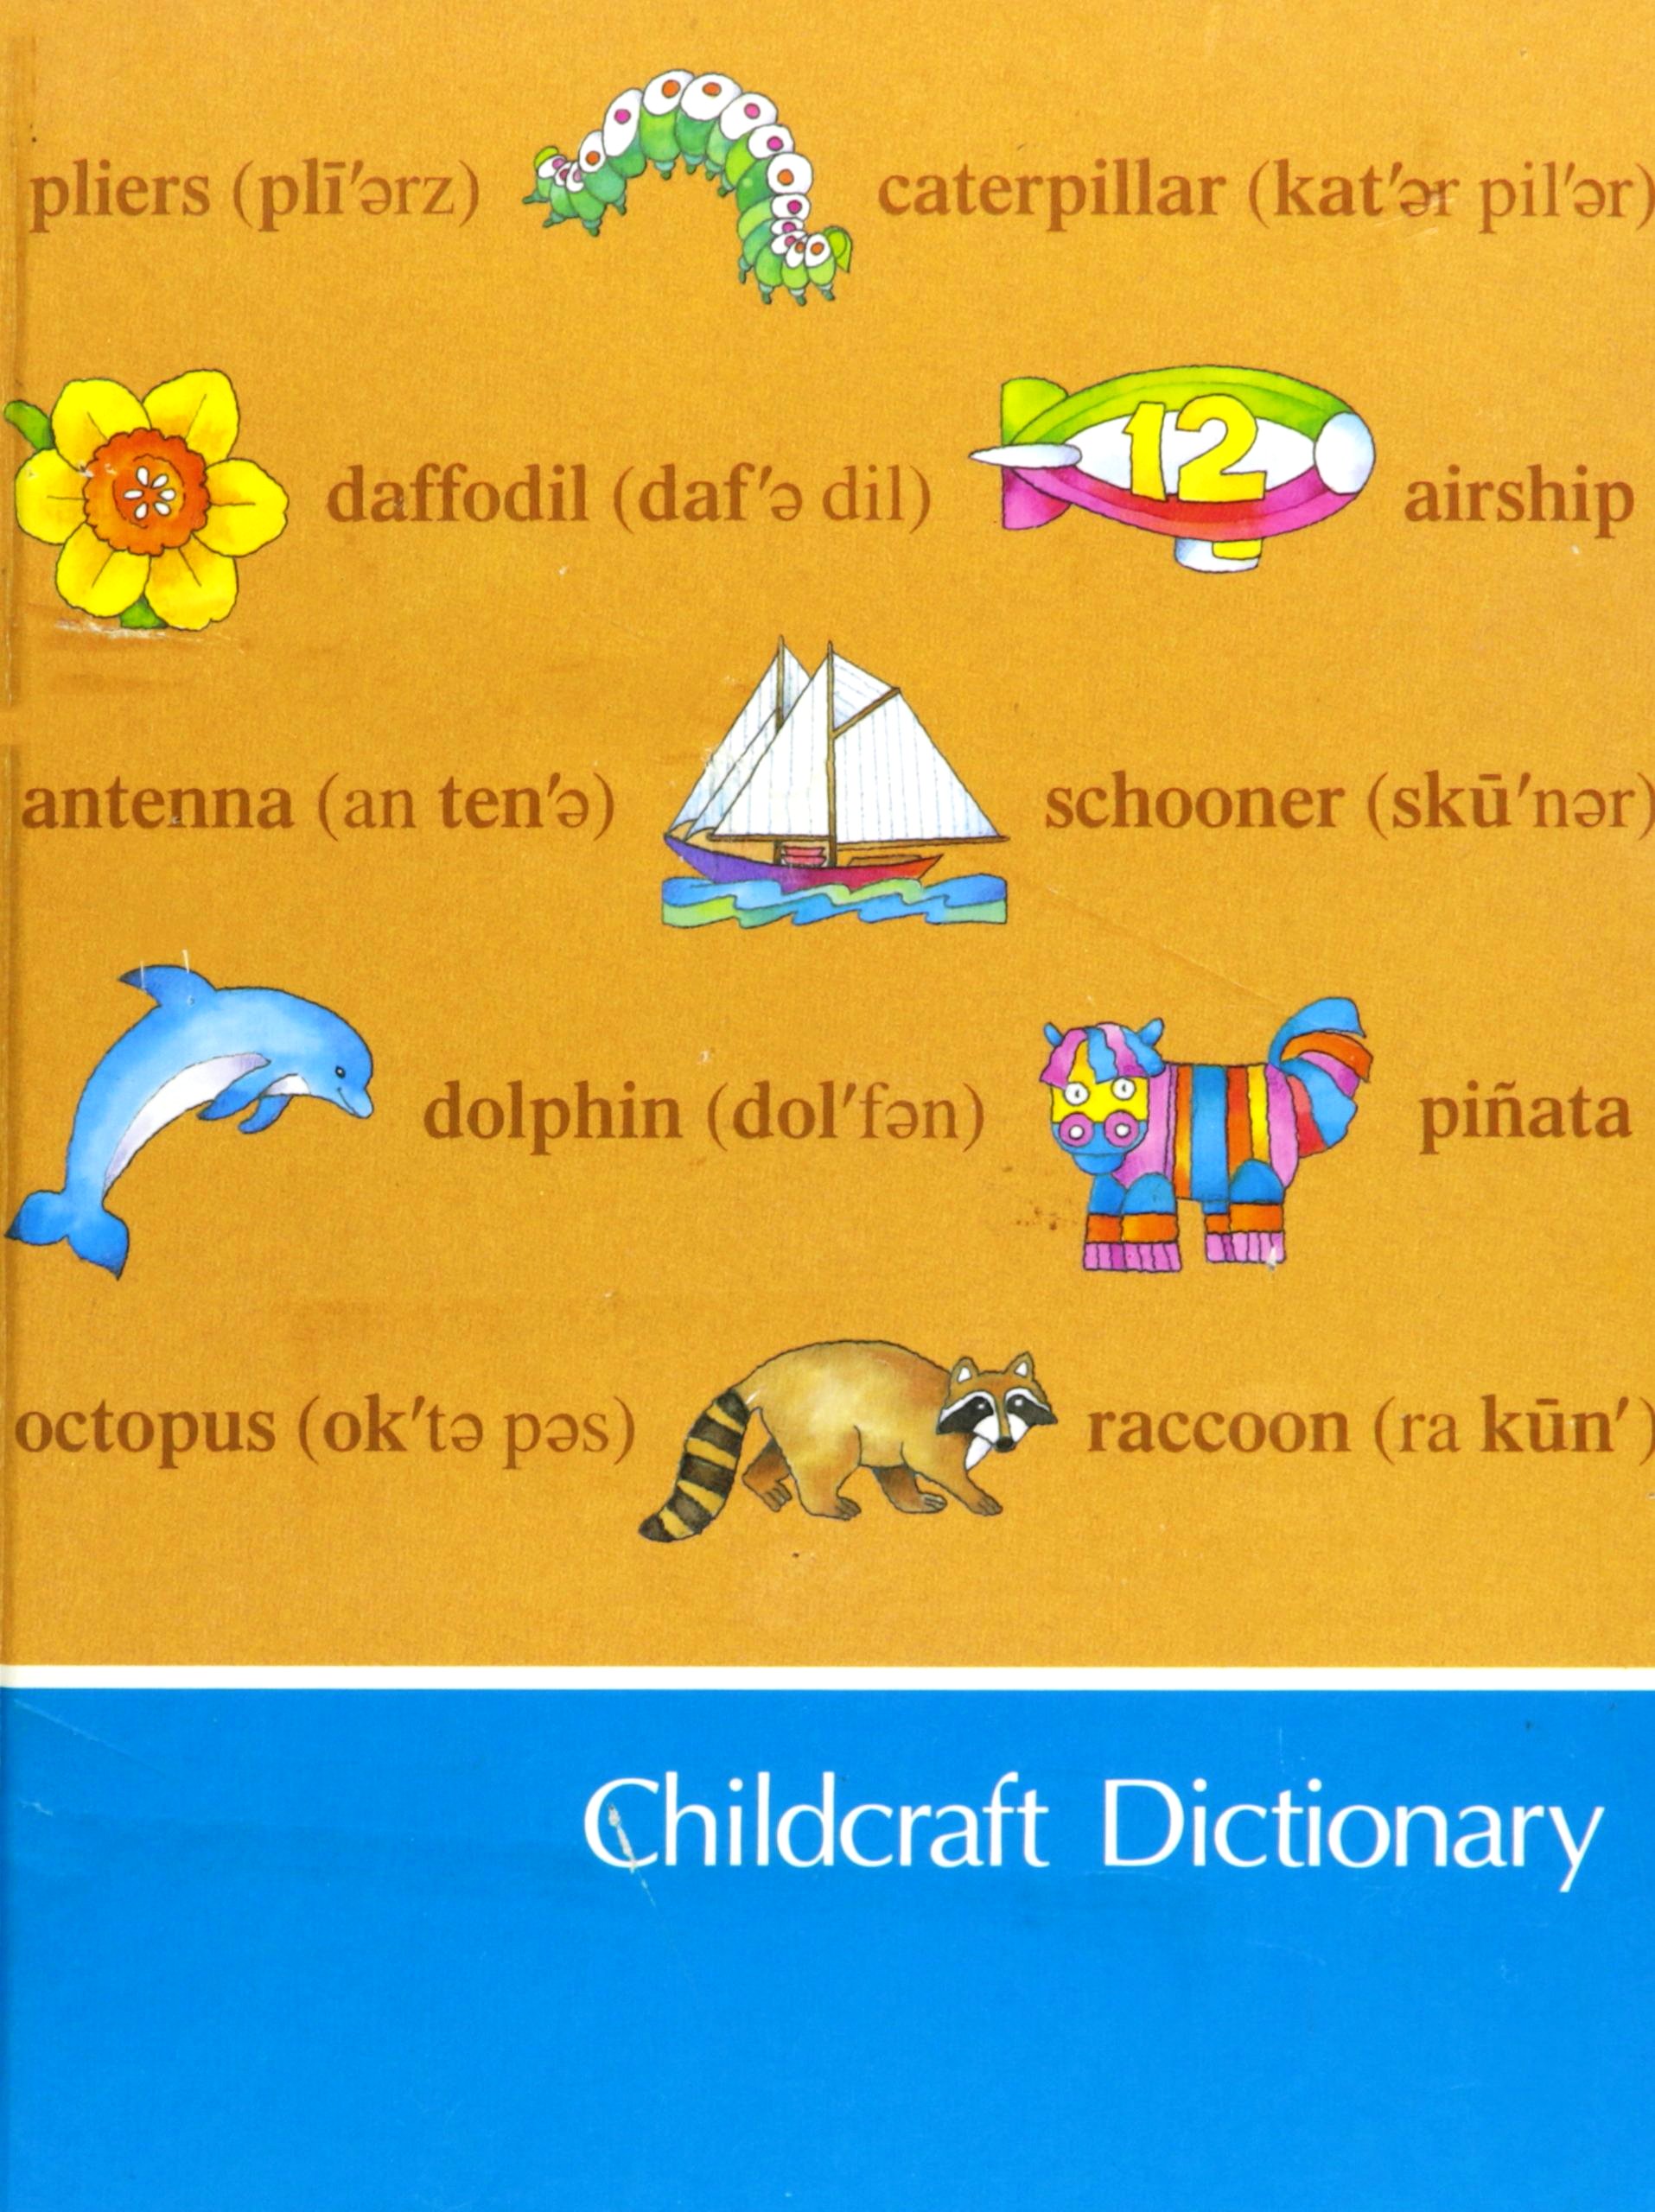 Childcraft Dictionary 2